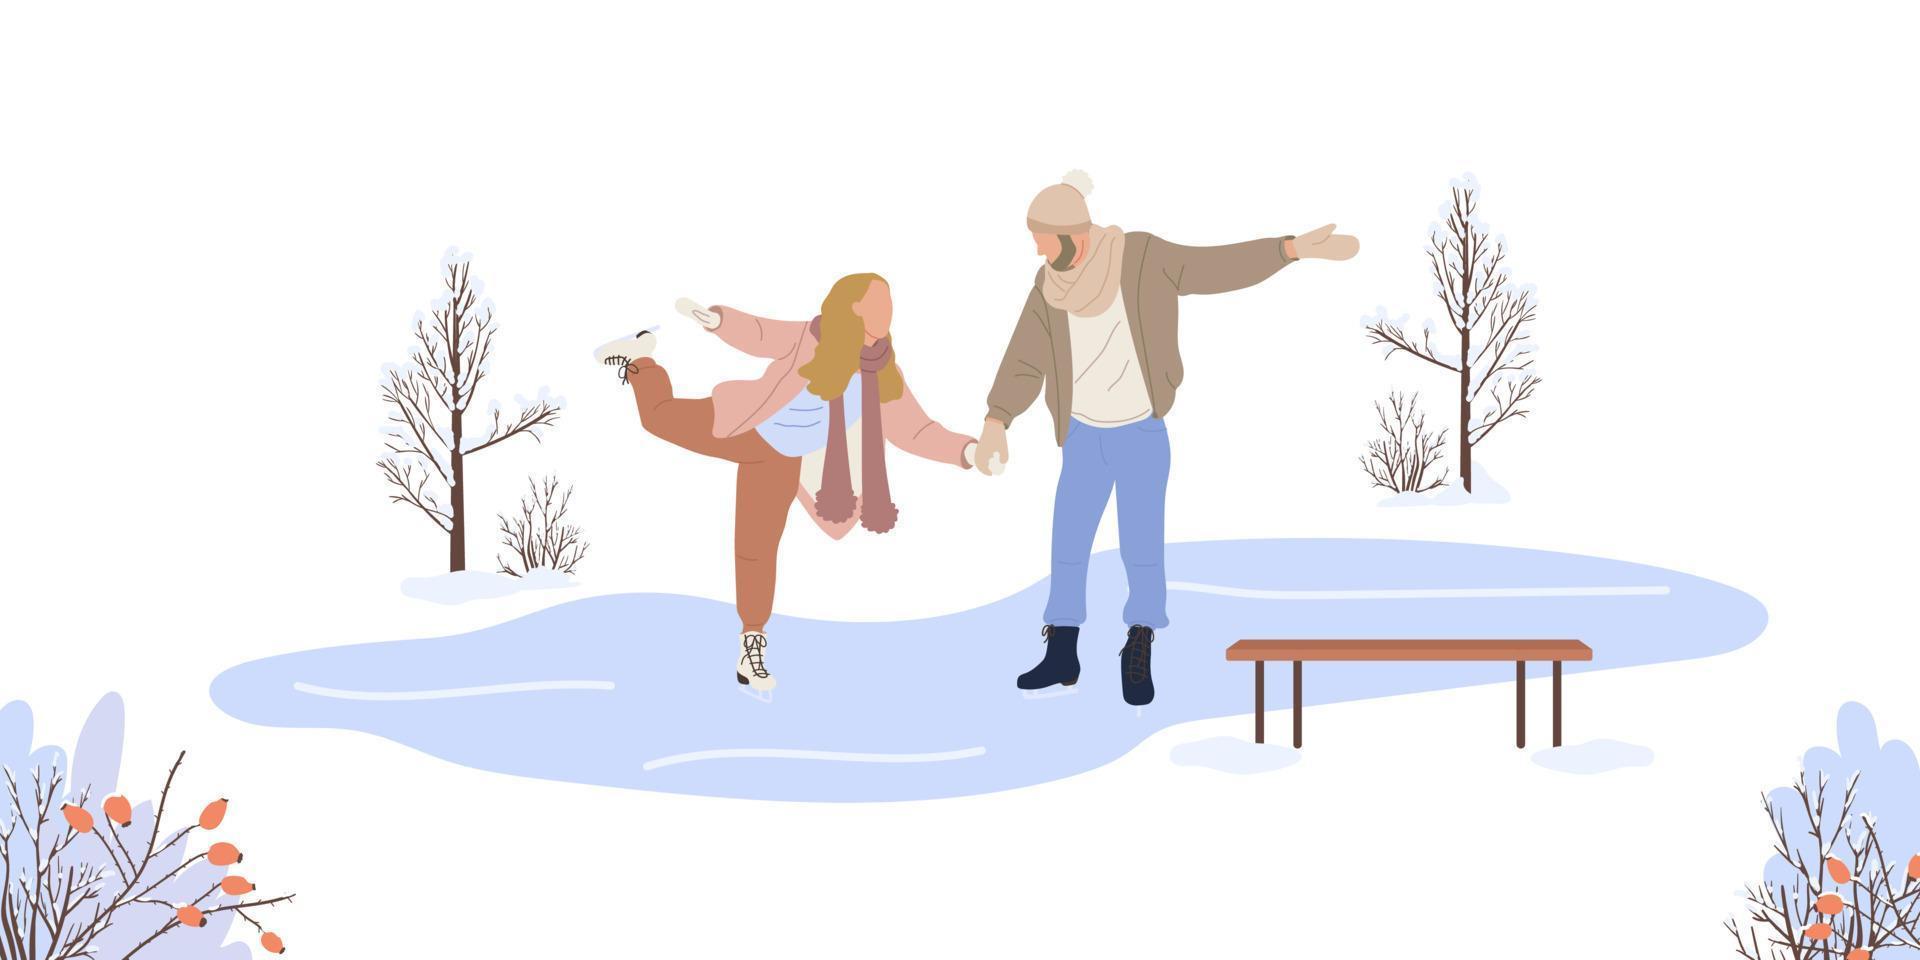 casal patinando em um lago congelado no inverno isolado no fundo branco. patinadores de homem e mulher nas férias de inverno. paisagem de inverno. ilustração em vetor plana.